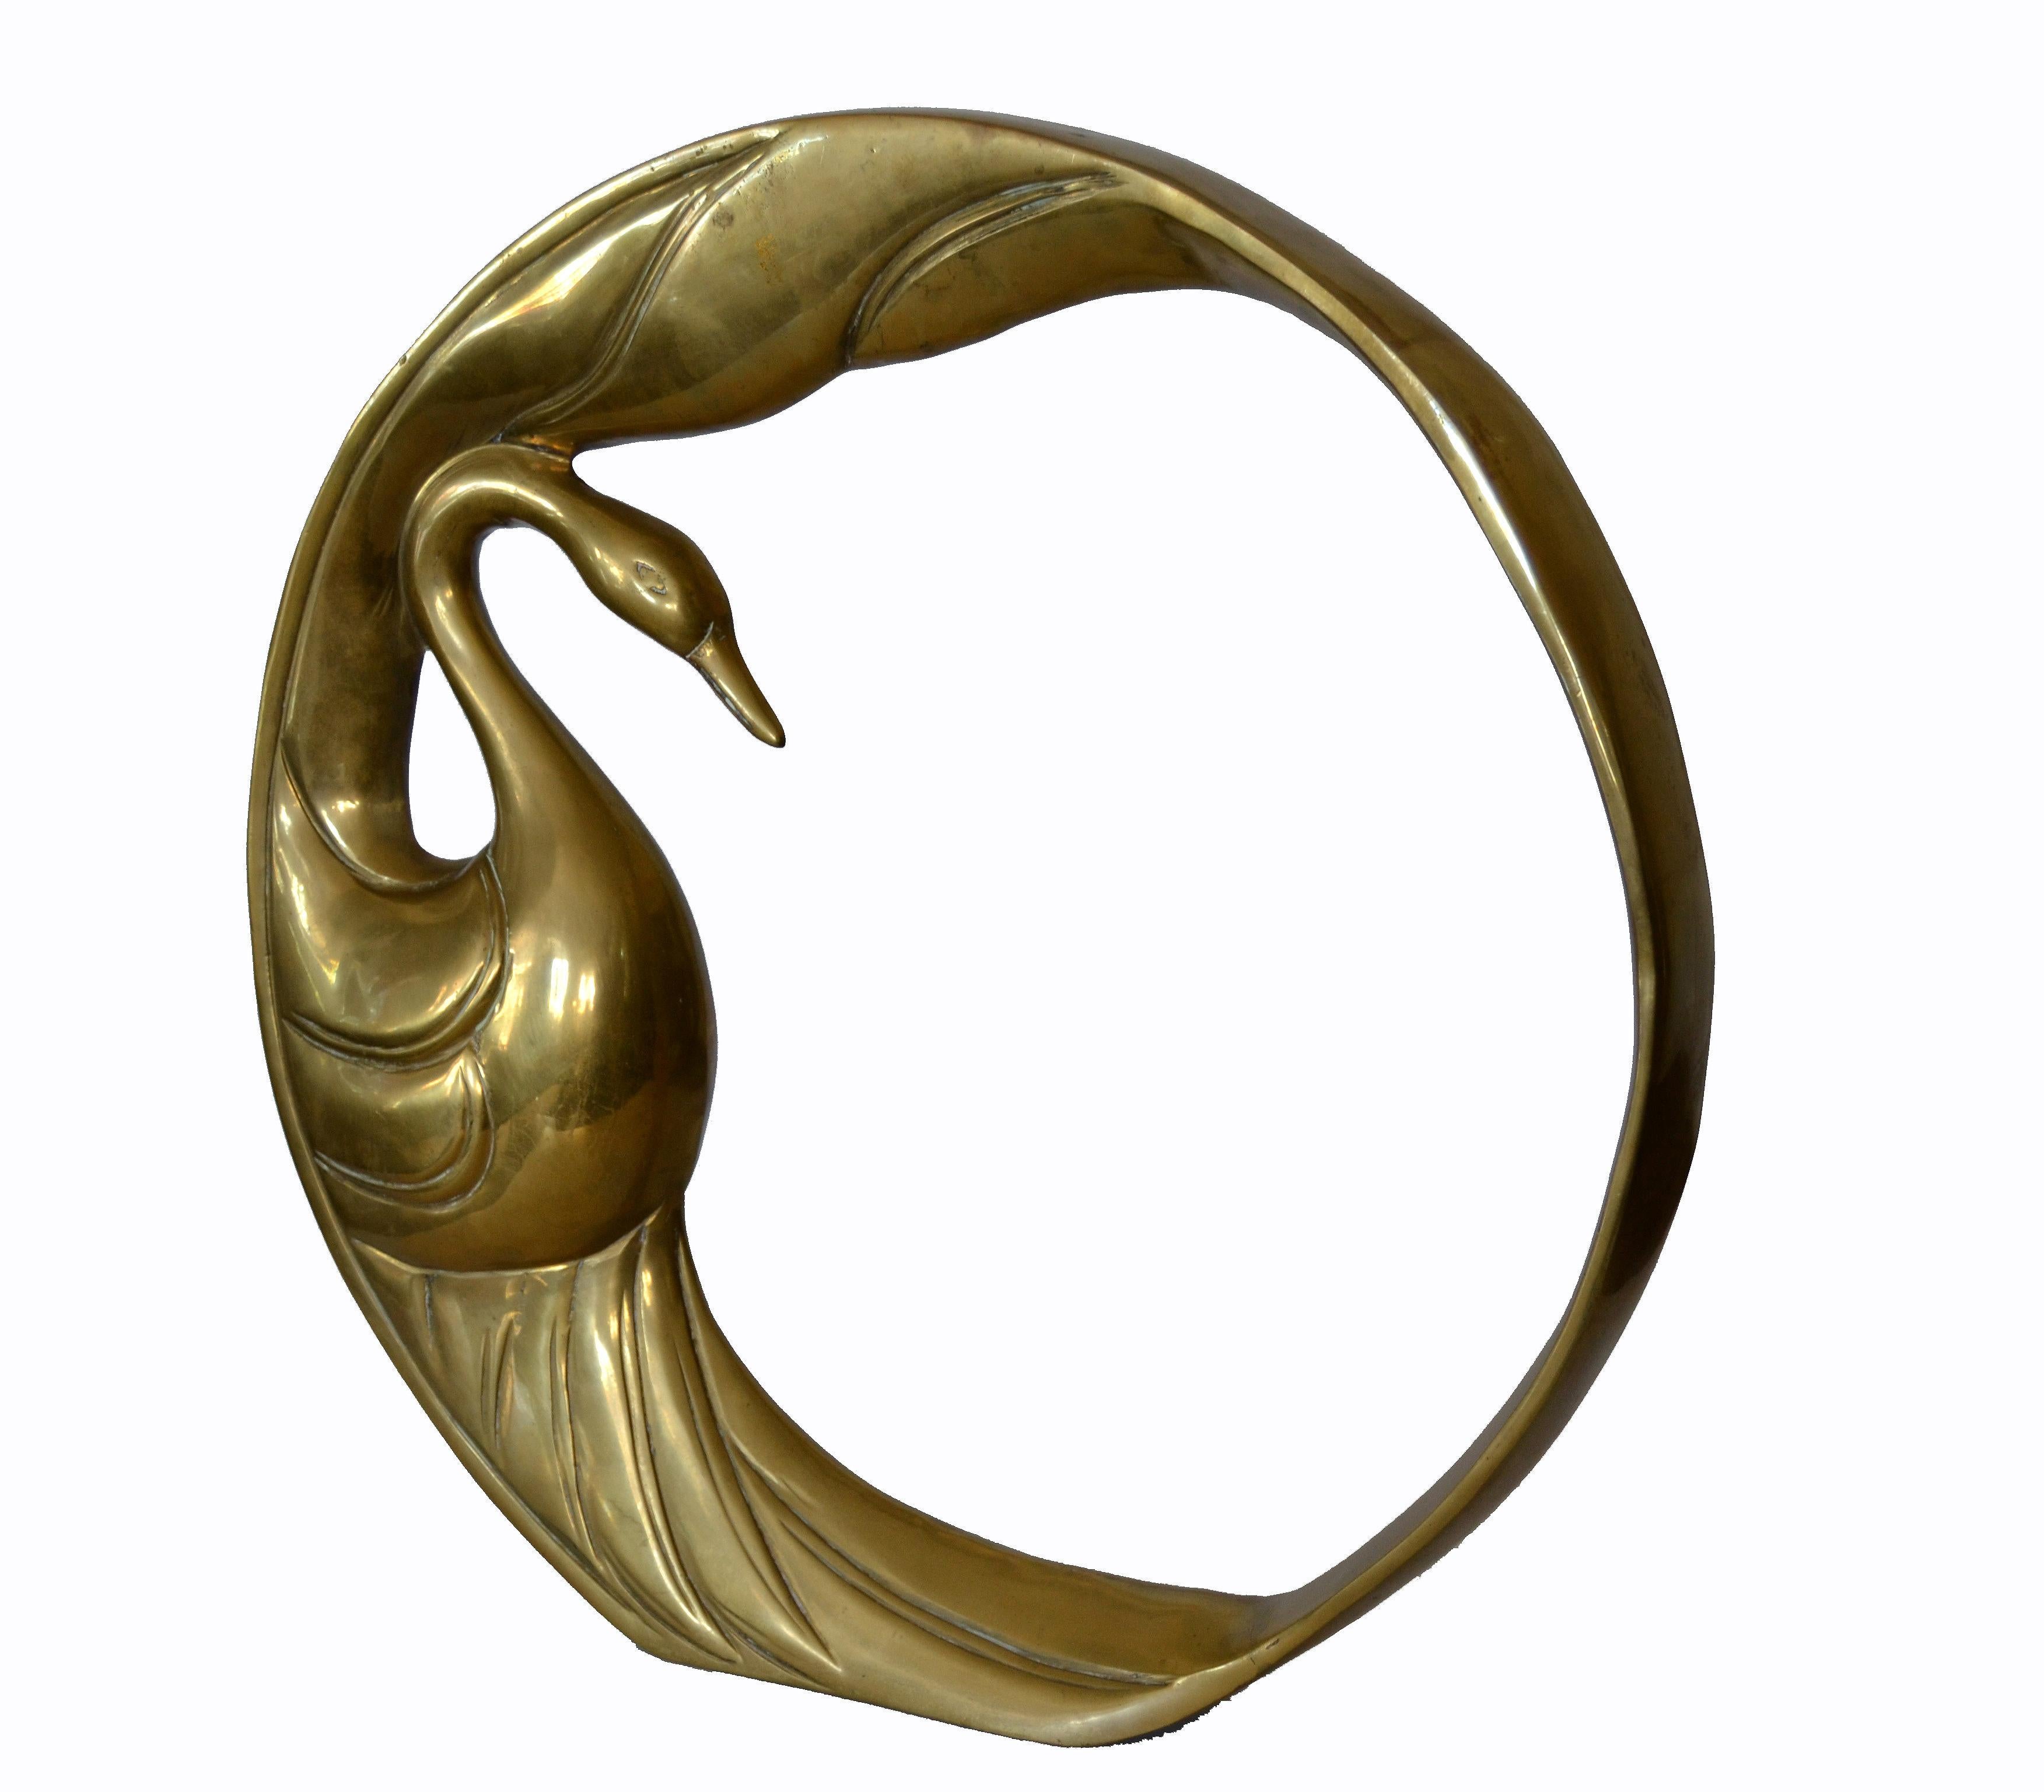 Wir bieten eine schwere Mid-Century Modern goldene Bronze Schwan Ring Tisch Skulptur von Dolbi Cashier, 1984.
Der Ring ist ein uraltes Symbol, so perfekt und einfach. Sie hat keinen Anfang und kein Ende.
Es ist rund wie die Sonne, wie der Mond,